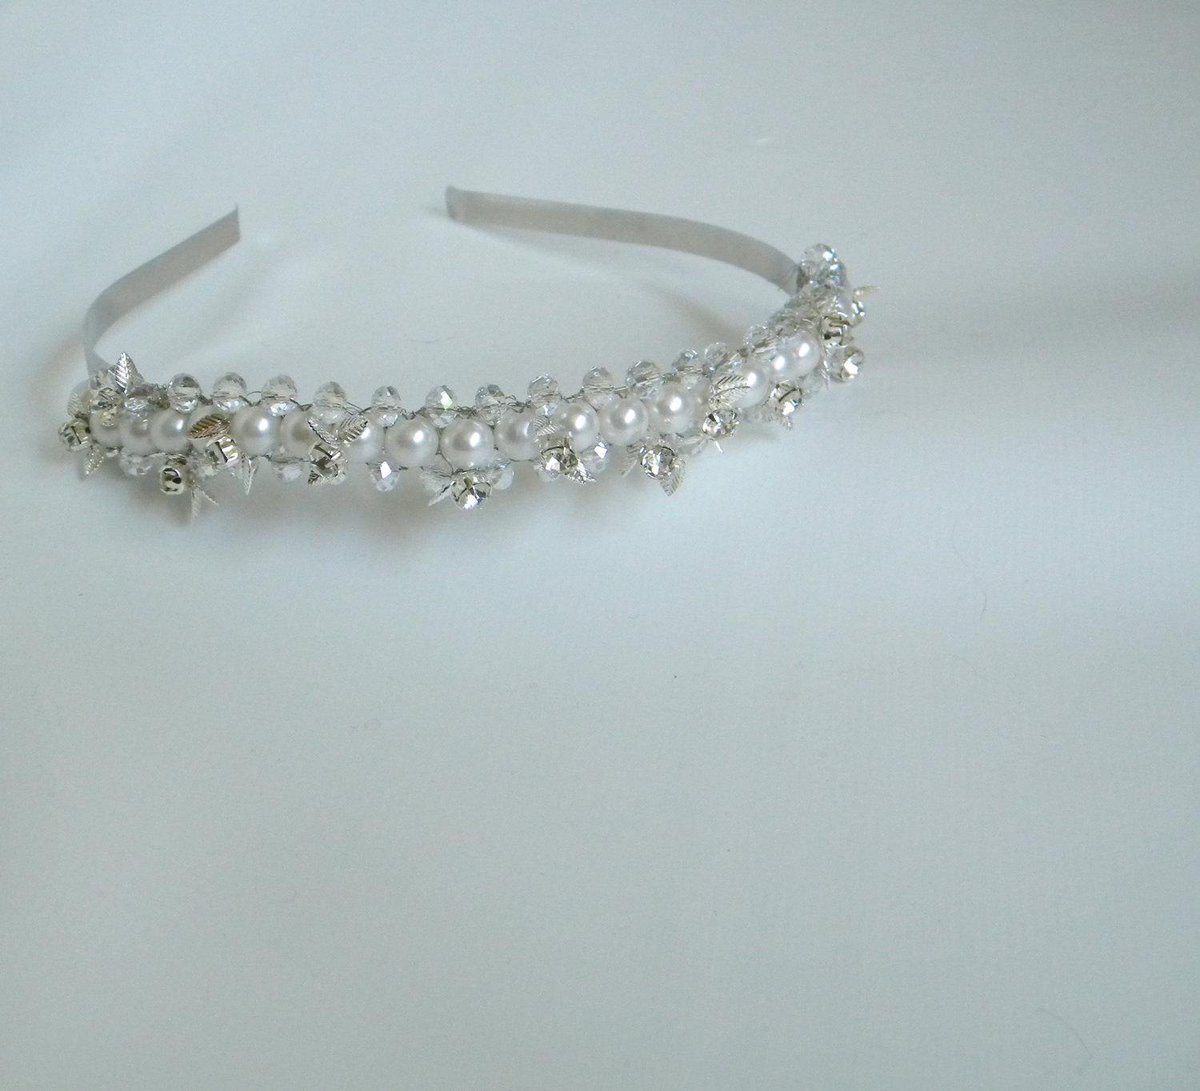 Rhinestone Pearl Bridal Tiara, Wedding Headband Vintage Upcyc… etsy.me/1rRe39l #handmade #VintageHeadpiece